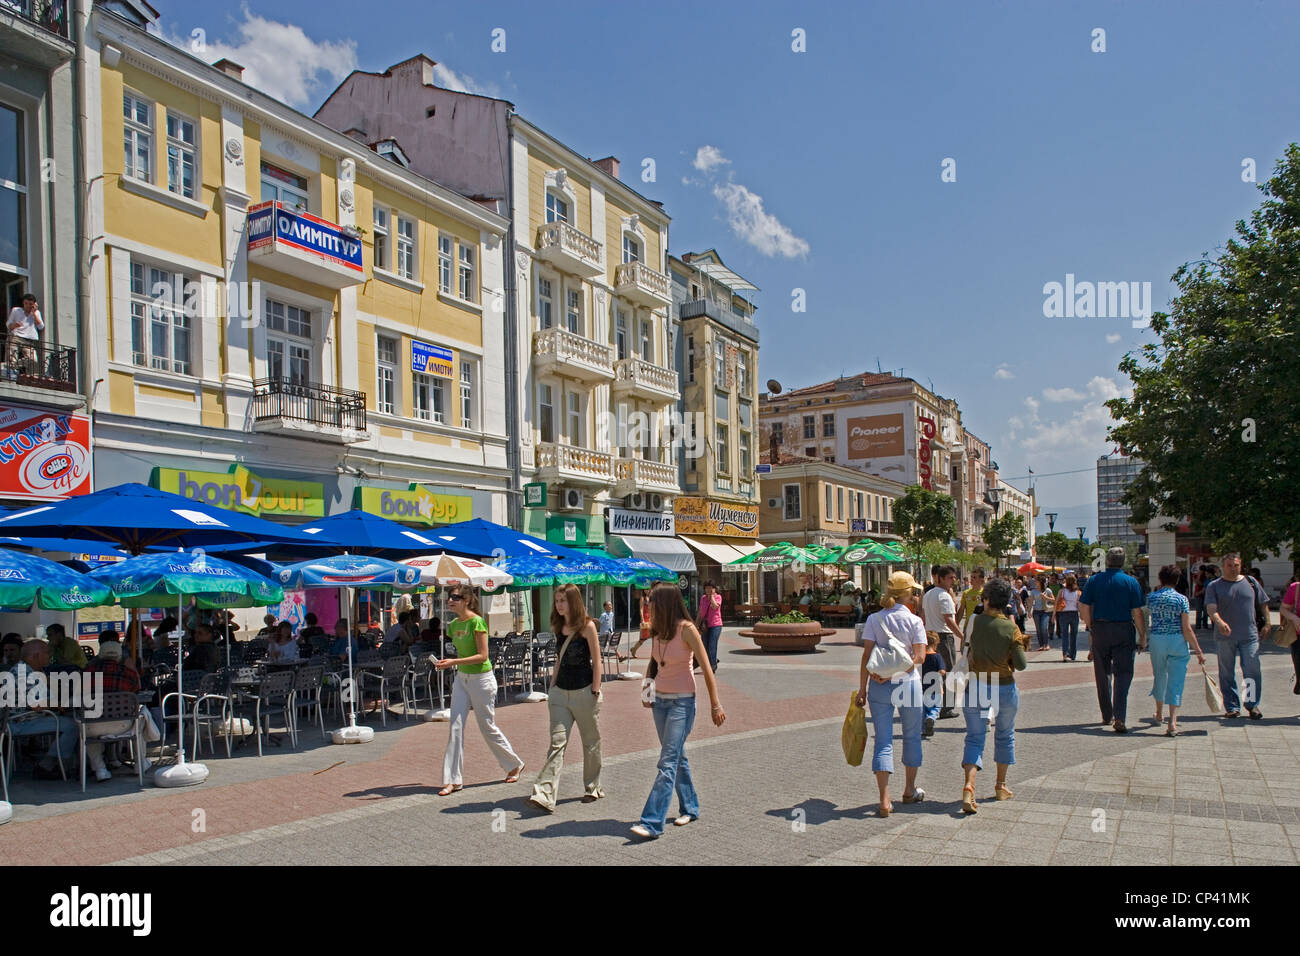 Bulgaria - Plovdiv. La gente caminando por la calle con el nombre de Alexander I, príncipe de Bulgaria Foto de stock